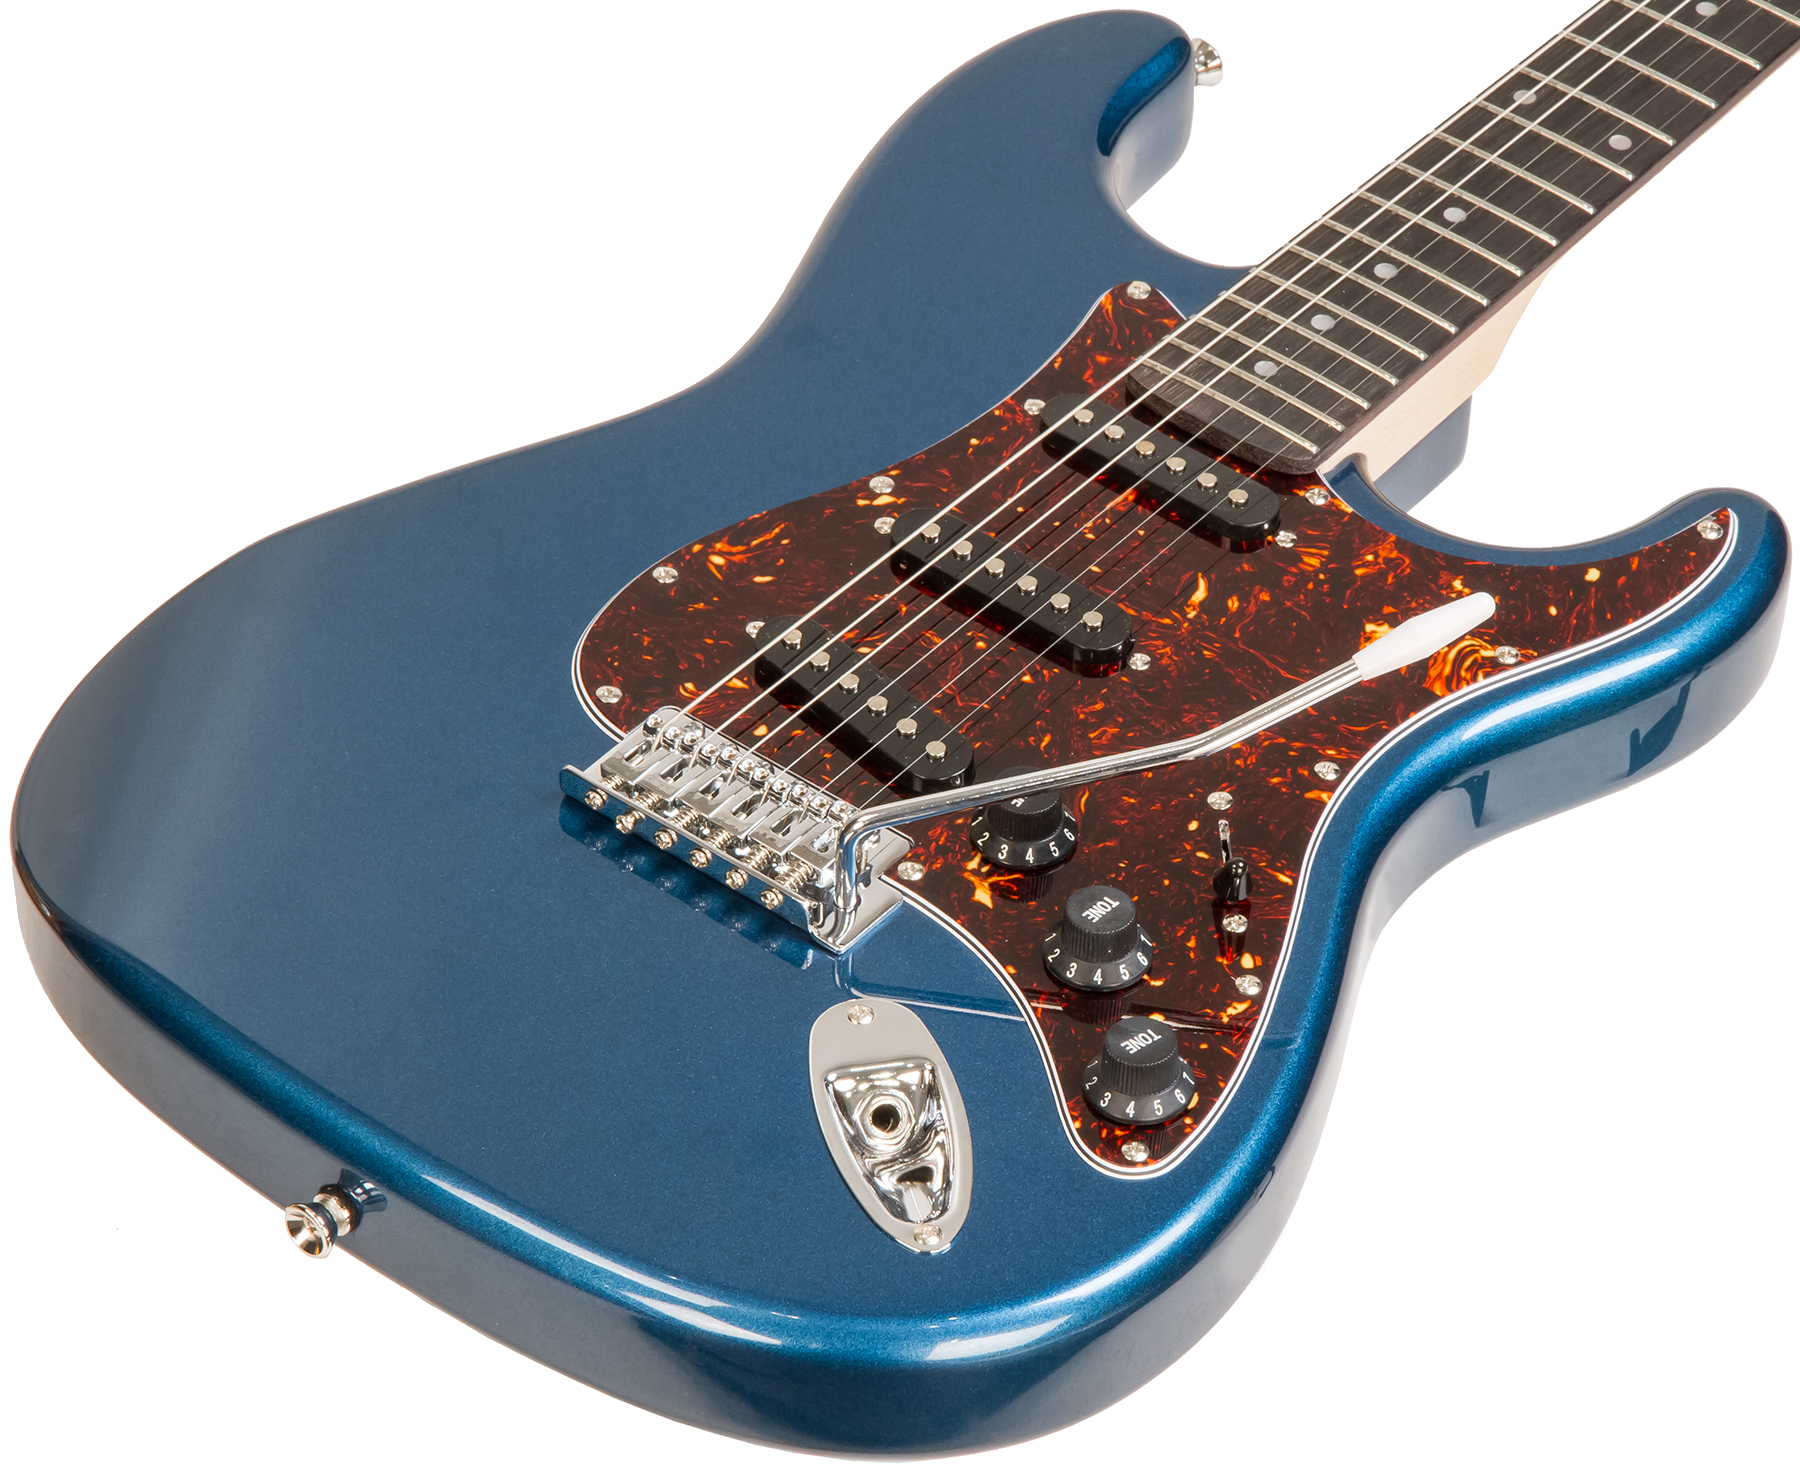 Eastone Str70t 3s Trem Pur - Lake Placid Blue - Str shape electric guitar - Variation 1